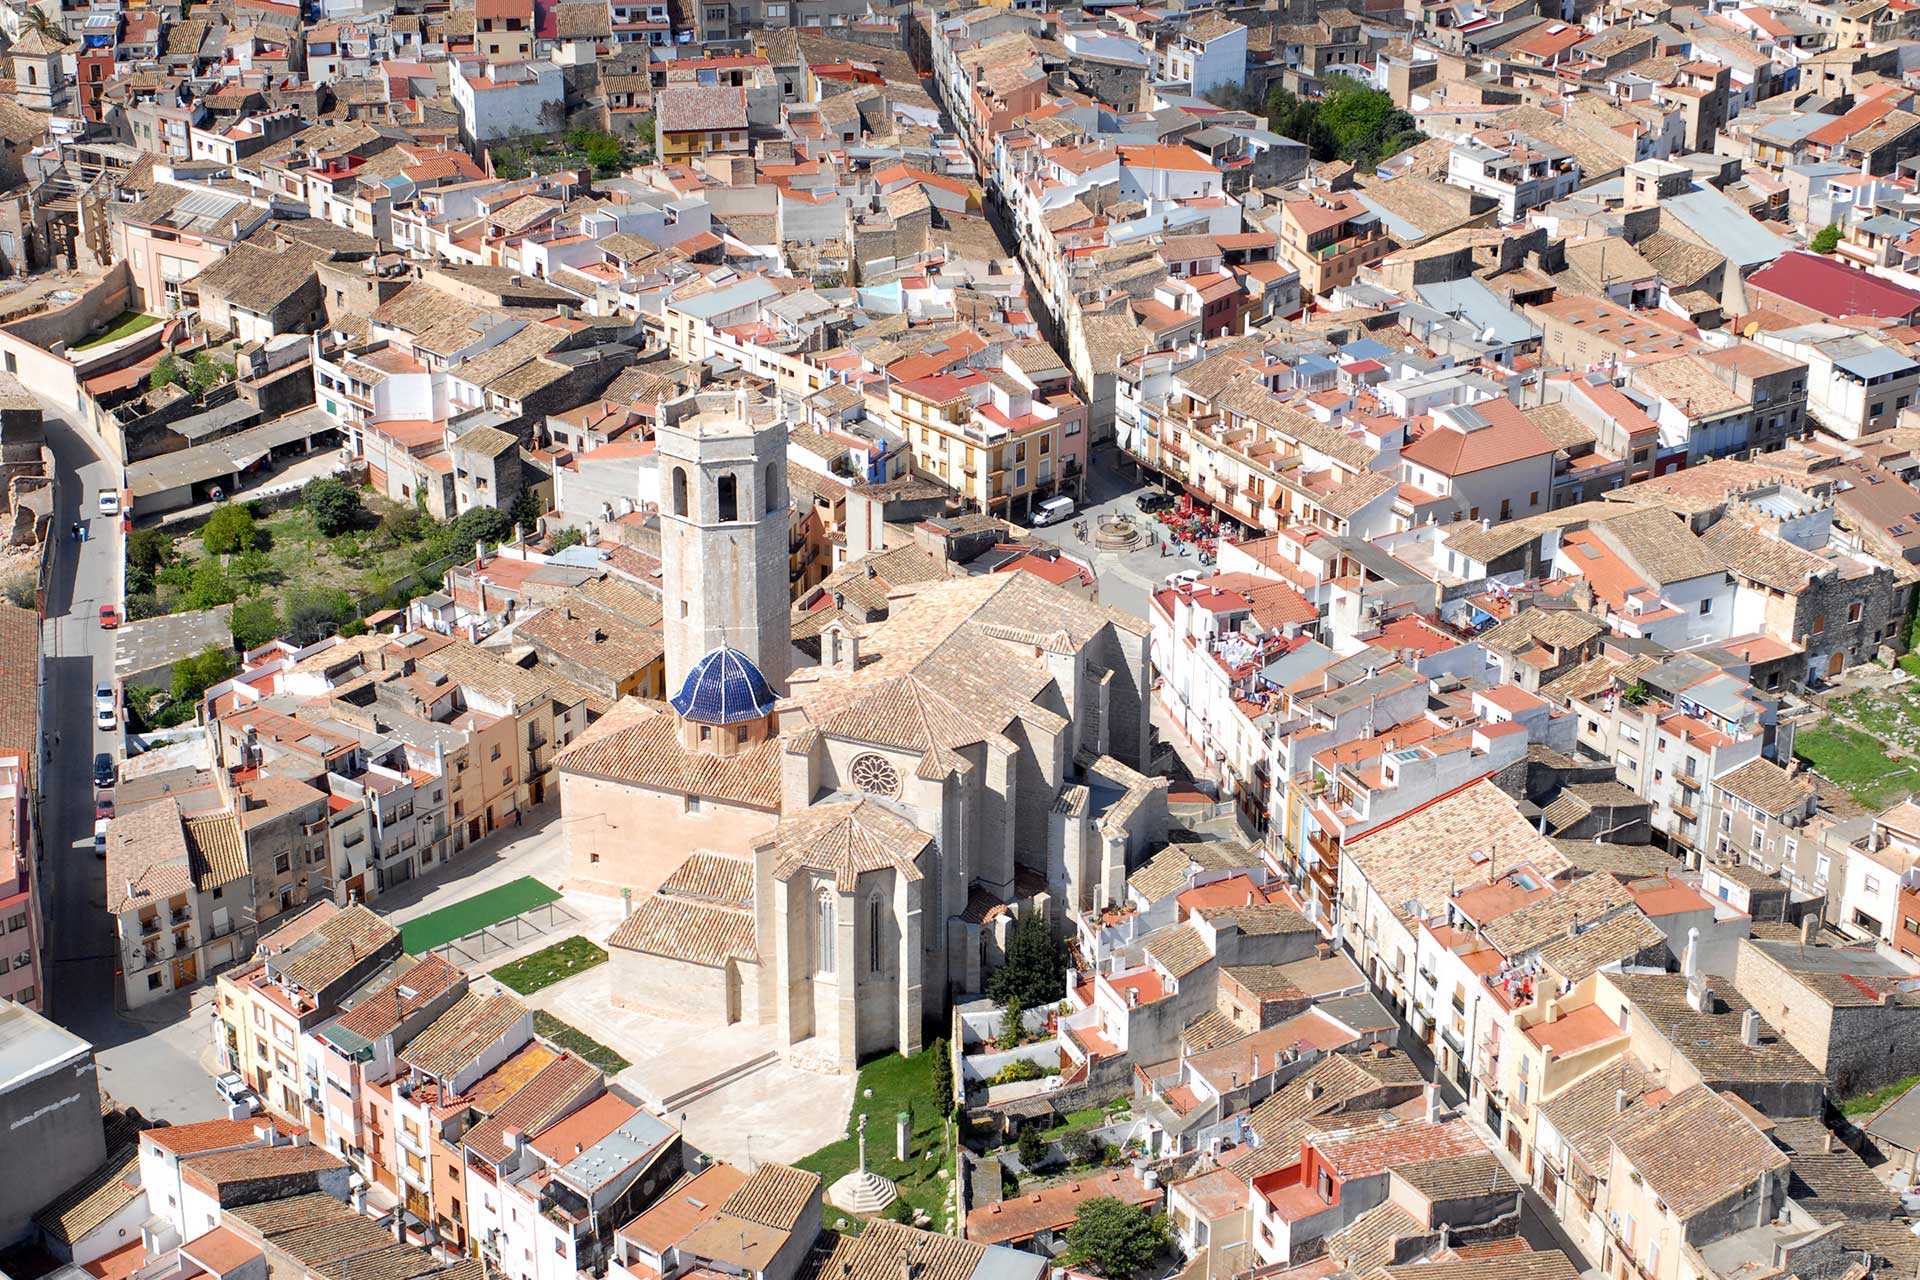 Historic centre of Sant Mateu